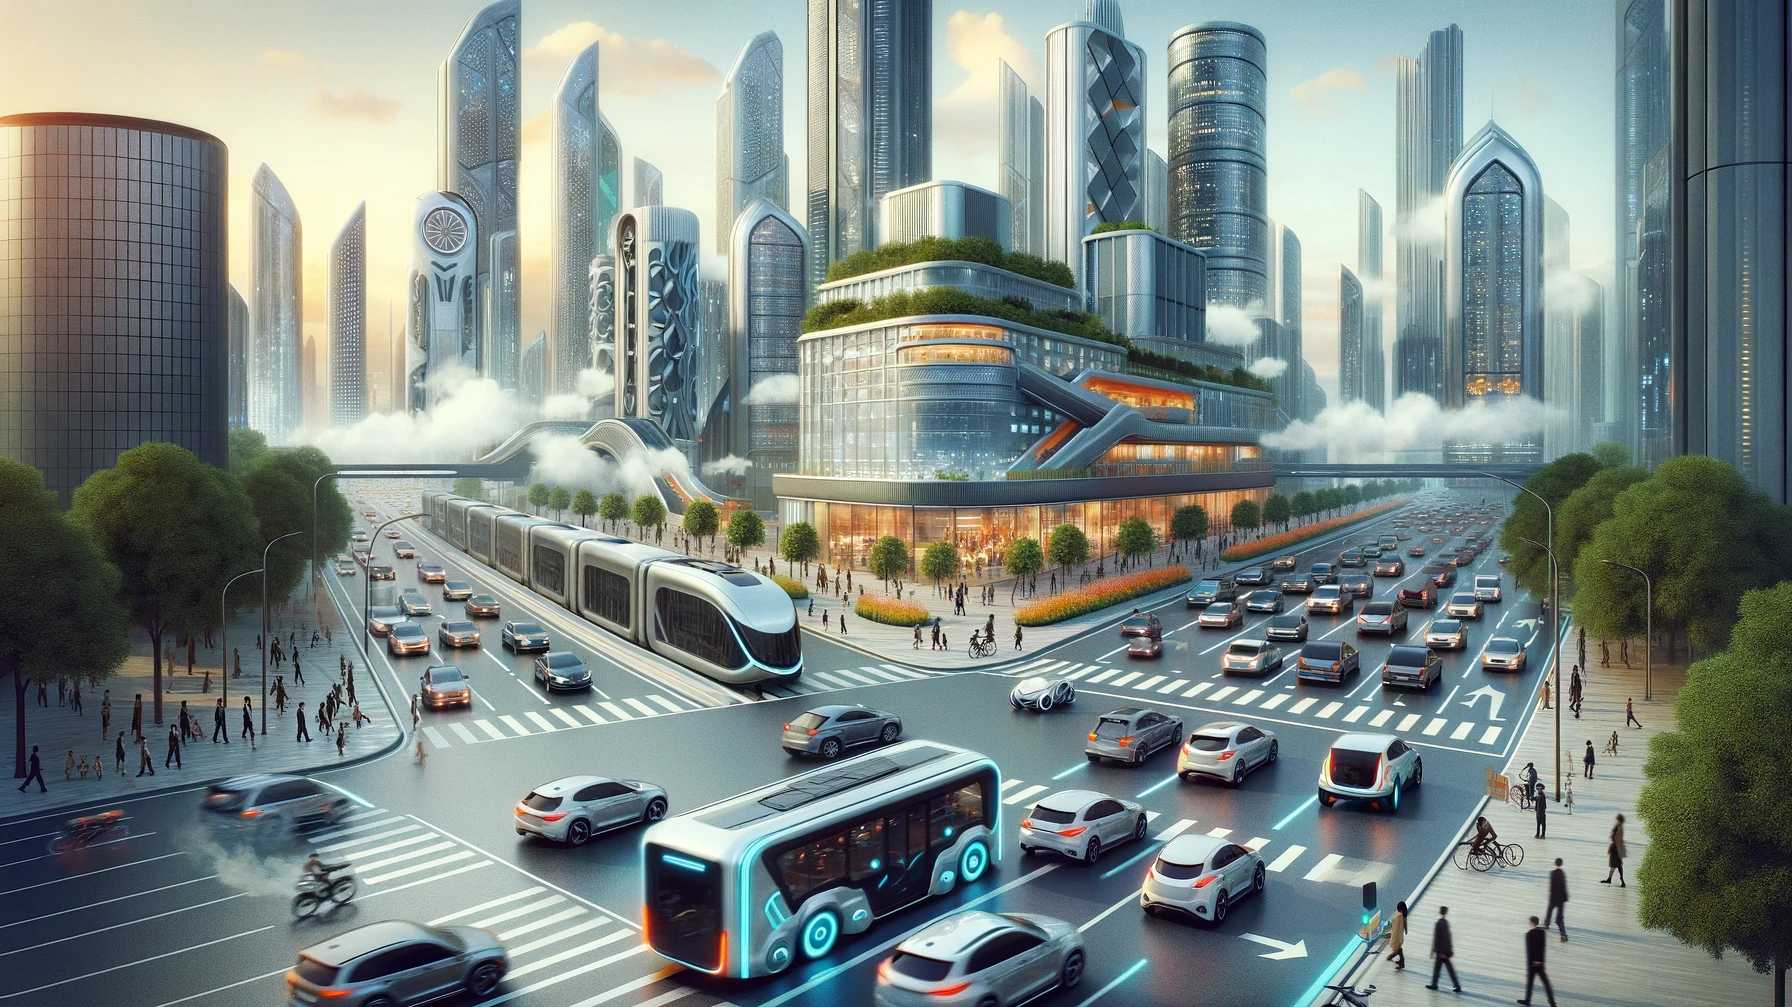 Futuristische Stadt mit Elektro- und Benzin-Fahrzeugen in harmonischer Koexistenz